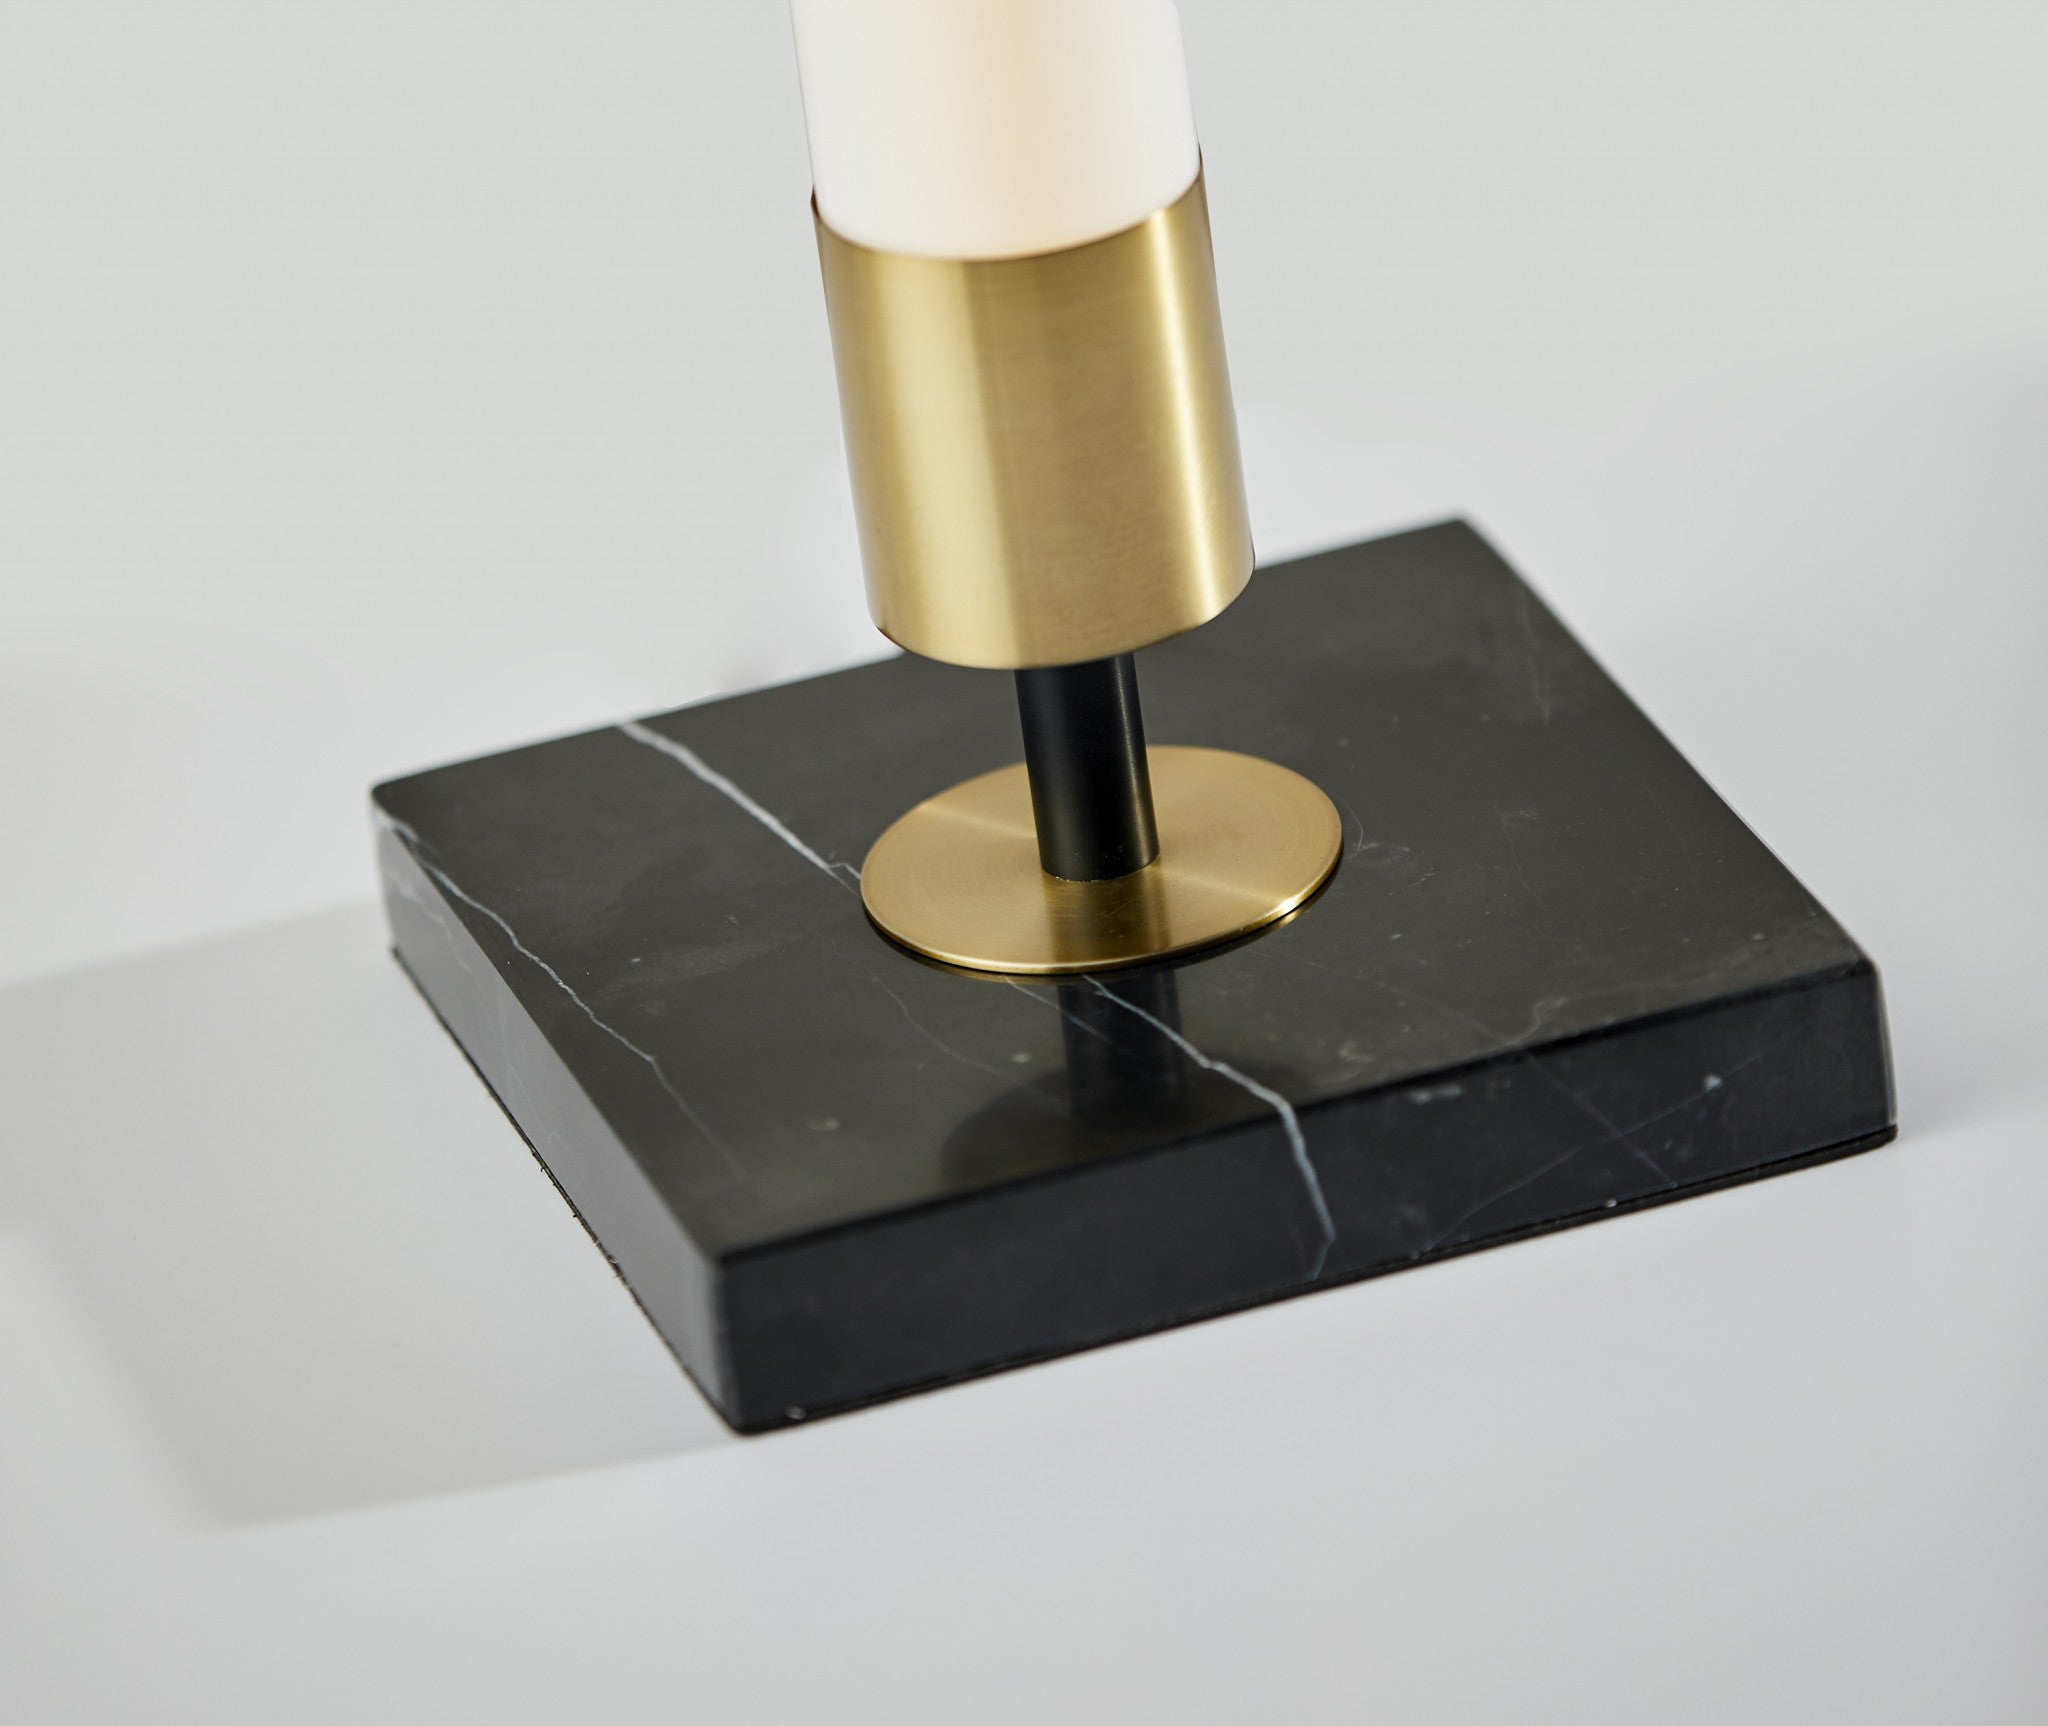 30" Black Marble Metal Standard Table Lamp